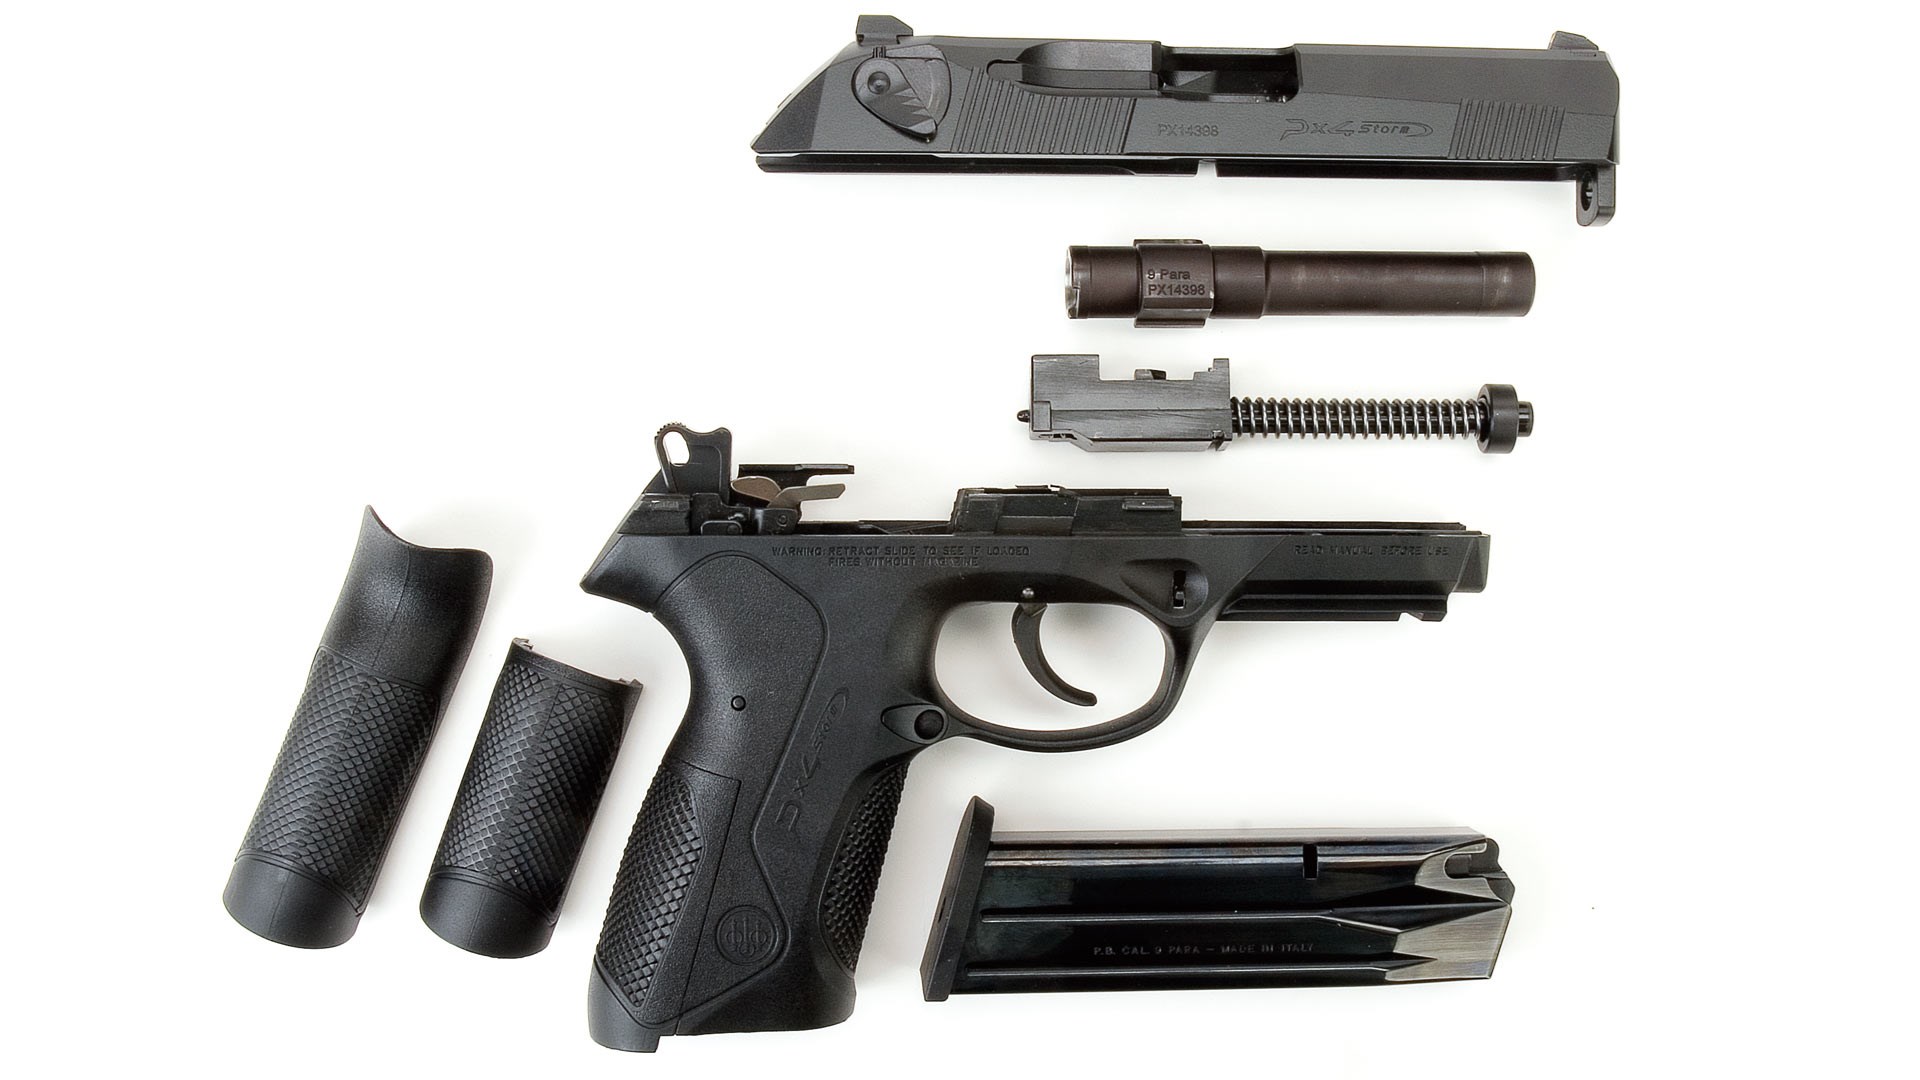 Beretta Px4 Storm disassembled view parts gun pistol handgun 9 mm